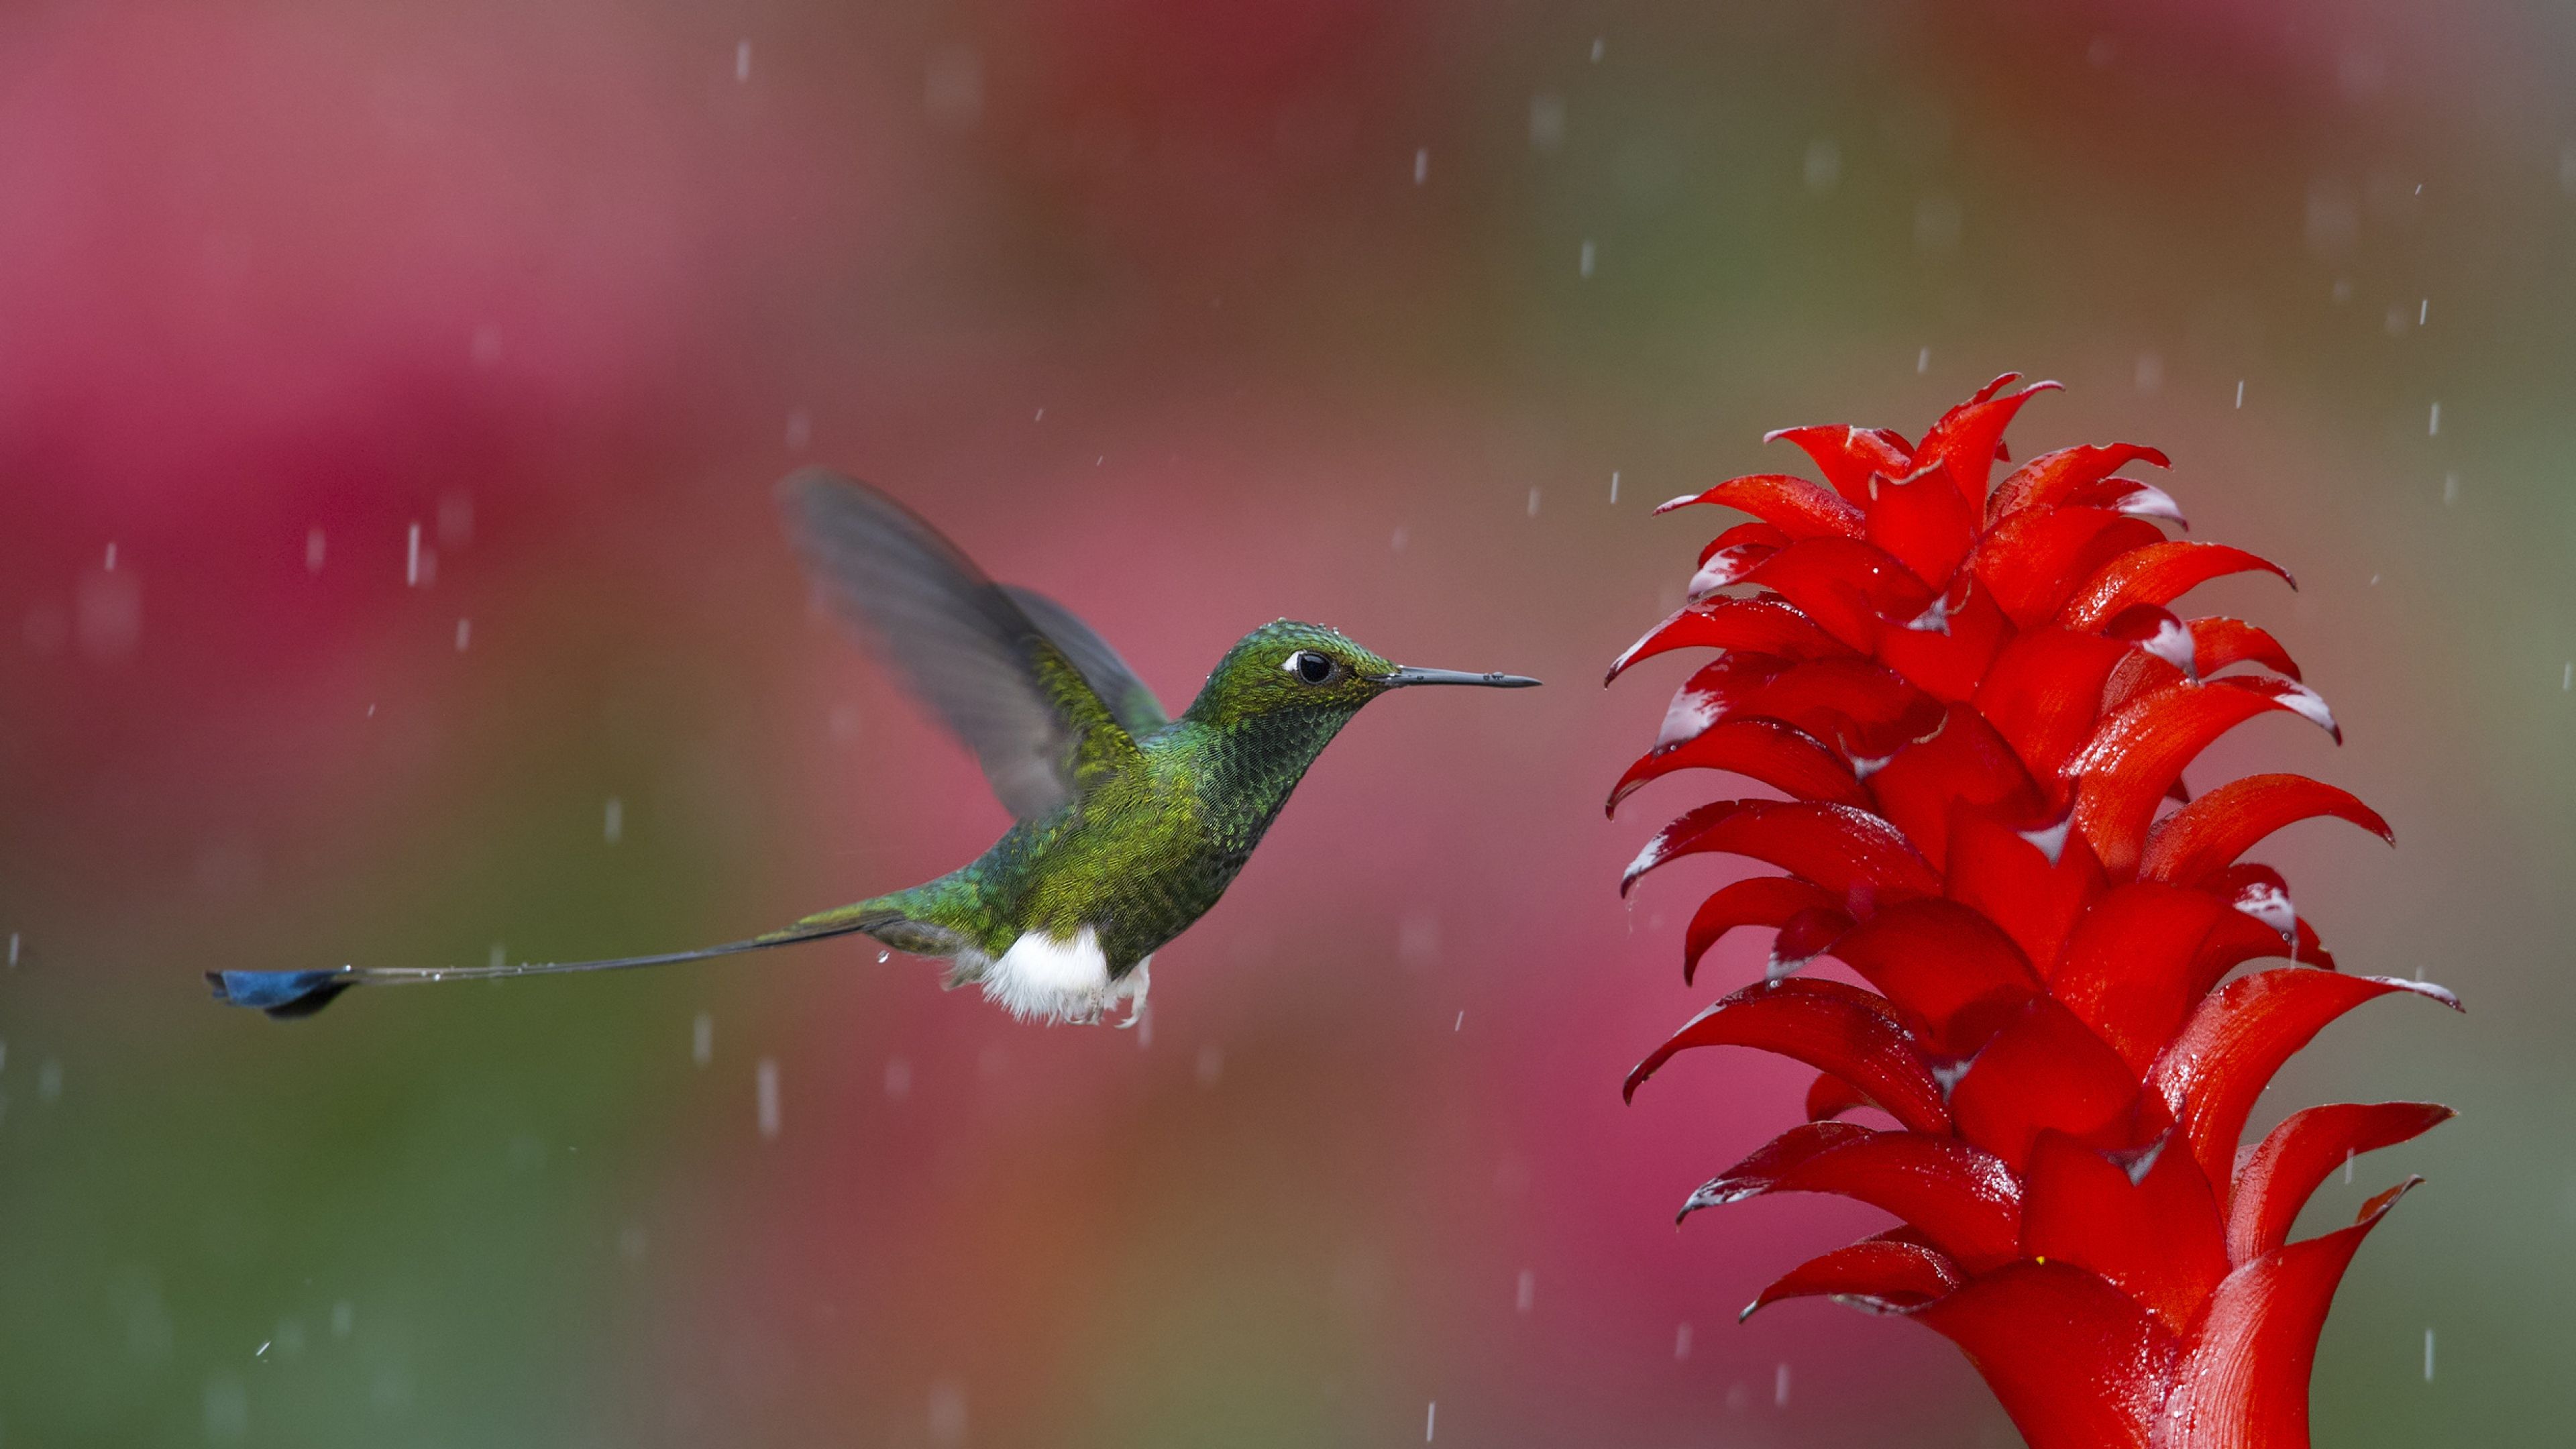 Hummingbird iPad Air HD 4k Wallpaper, Image